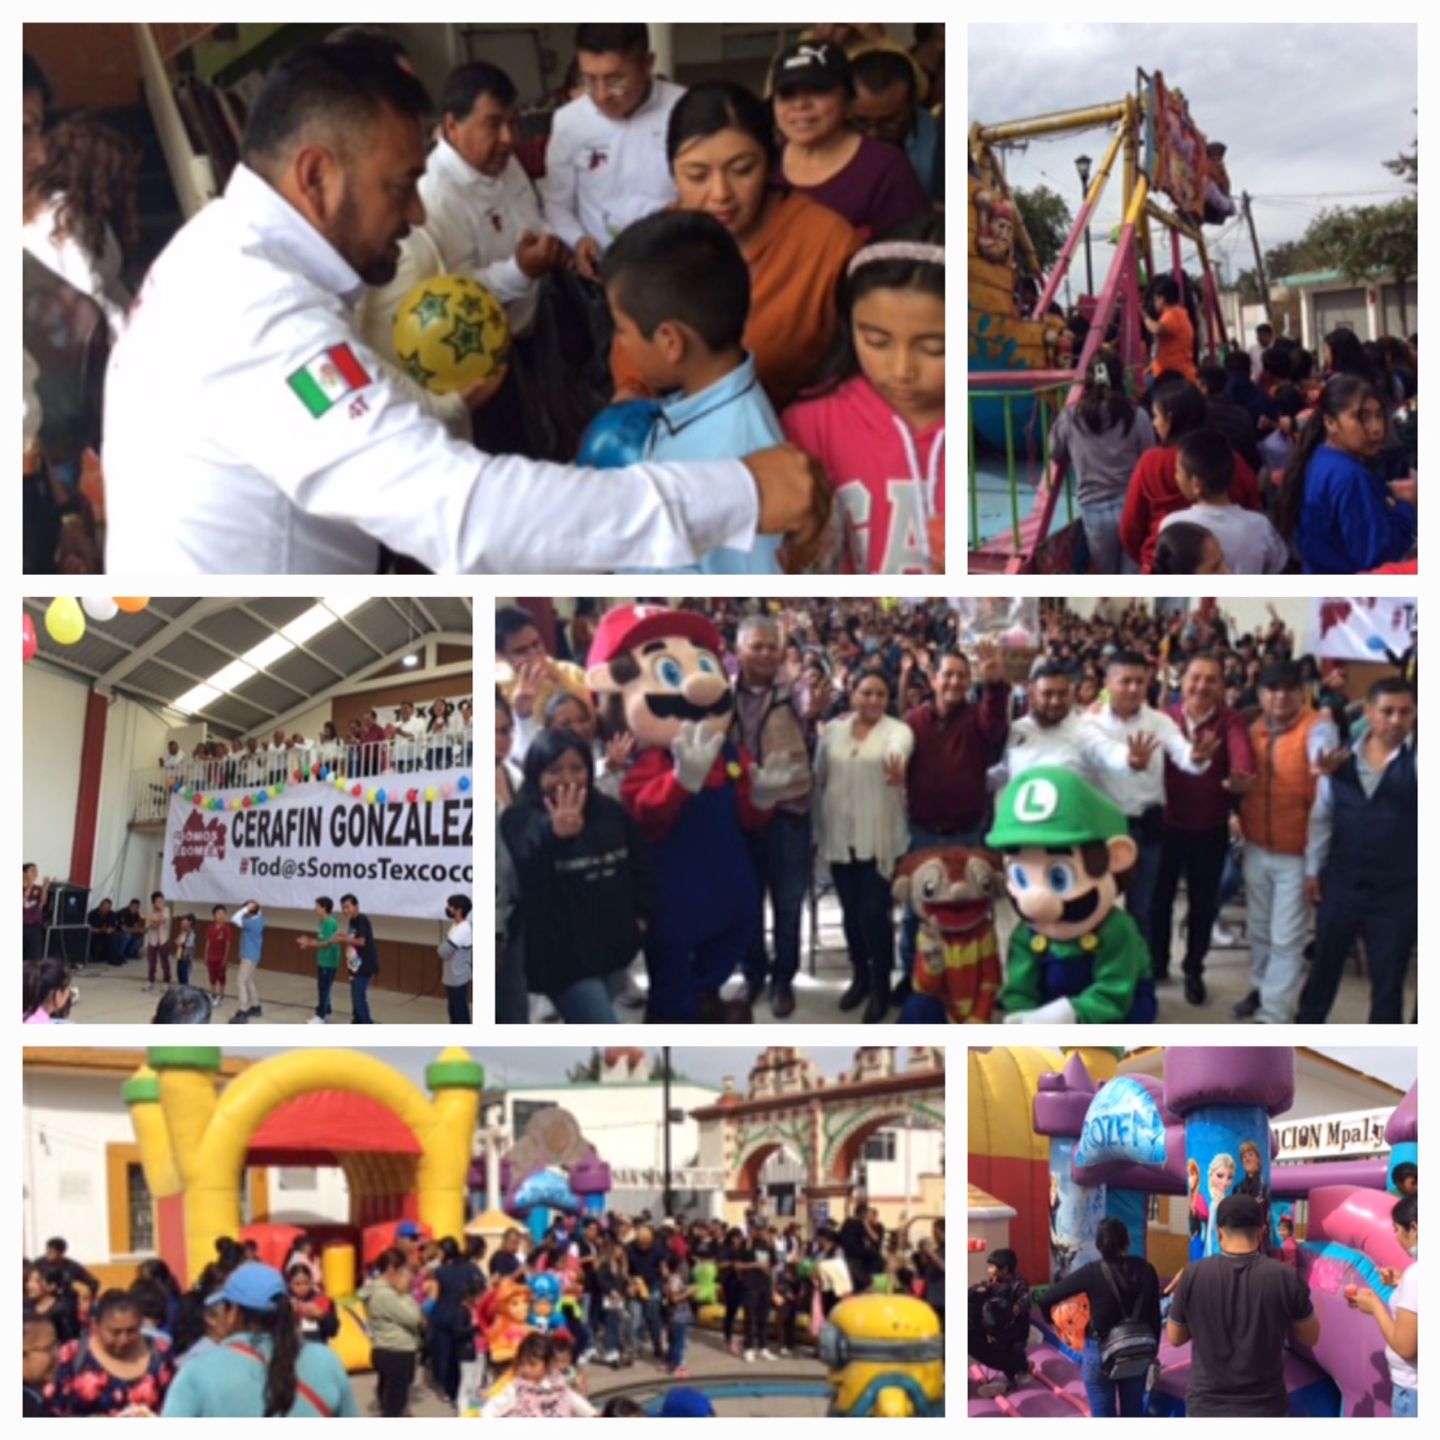 Cerafin Gonzalez dirigente municipal de Somos Estado de México festejó a las infancias de Texcoco